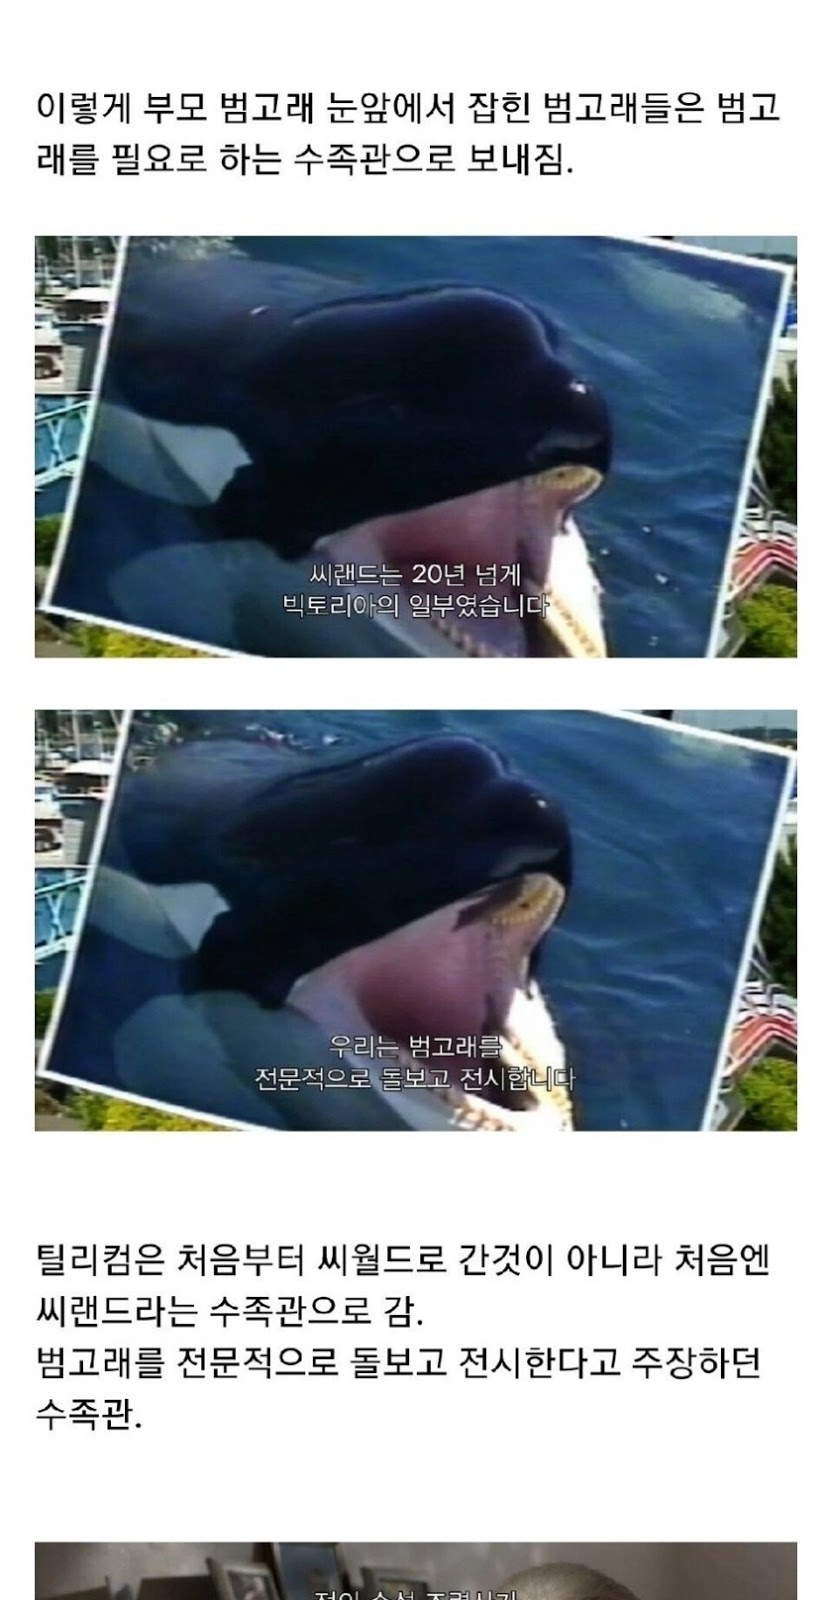 범고래 습격 사건